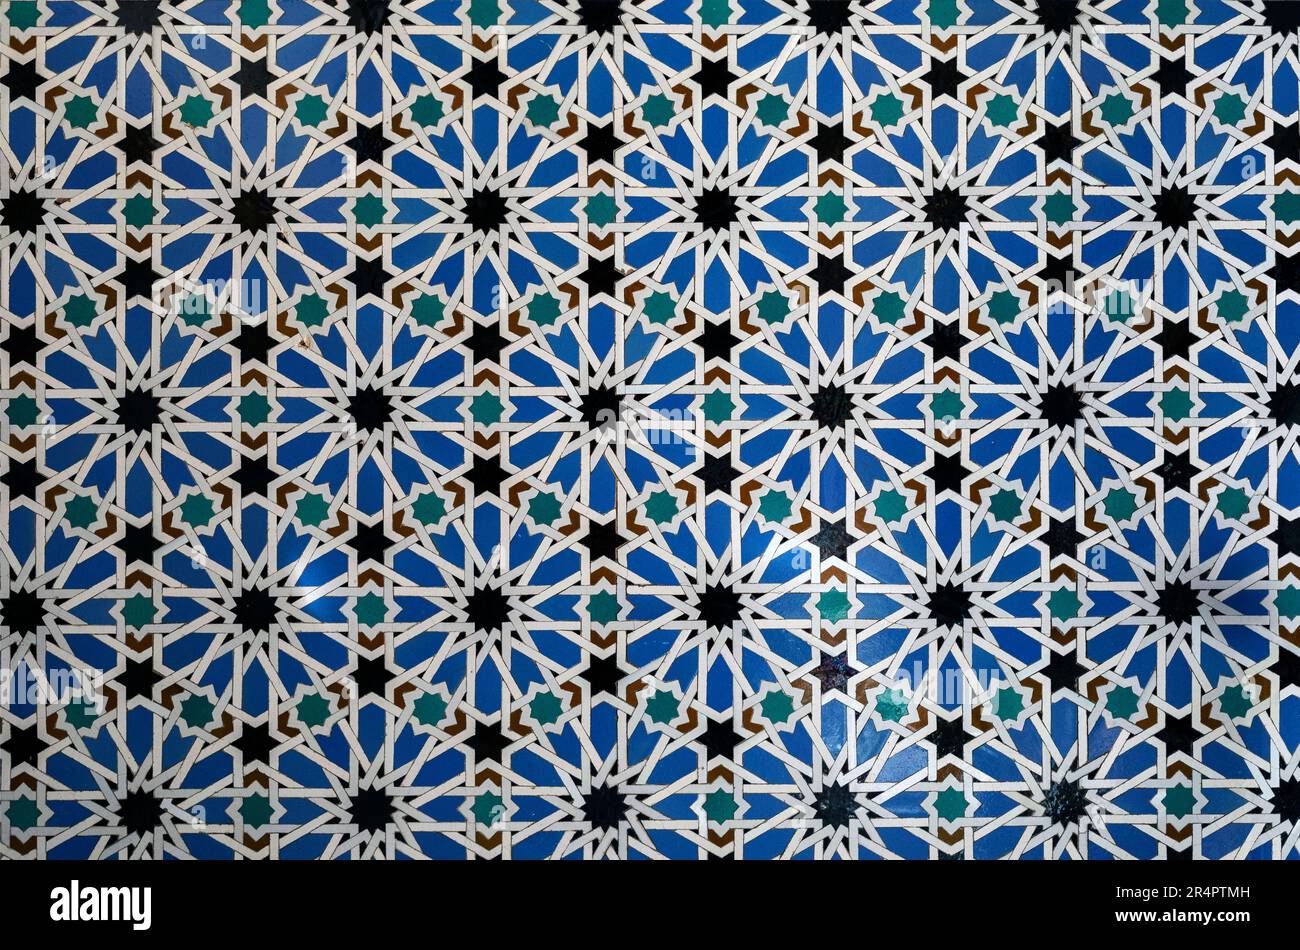 Spain, Andalusia, Seville, Alcazar of Seville, zellij tile work Stock Photo